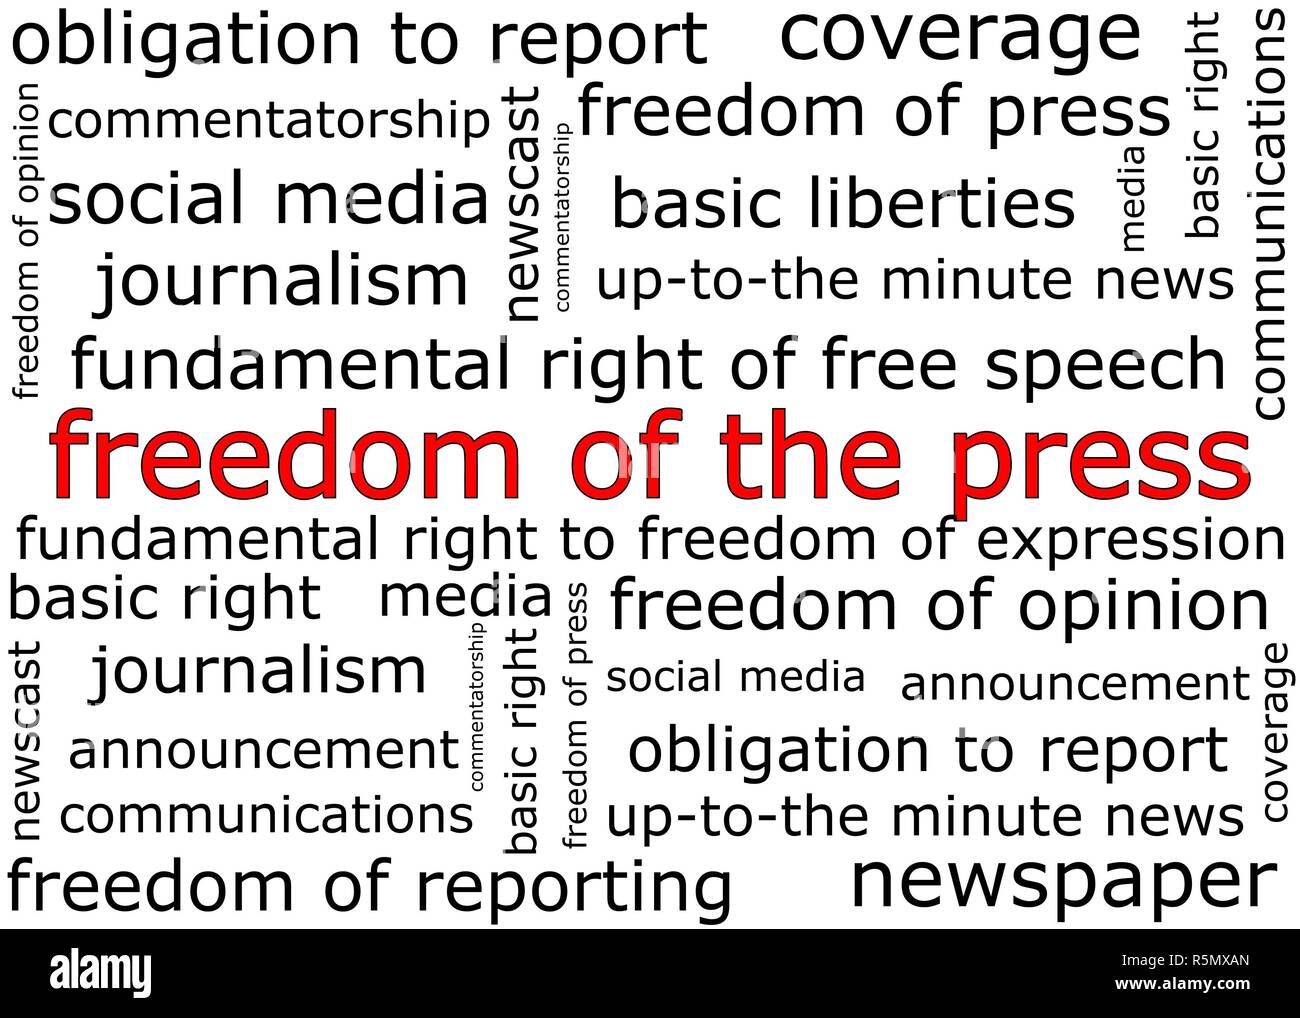 La liberté de la presse - illustration wordcloud Banque D'Images